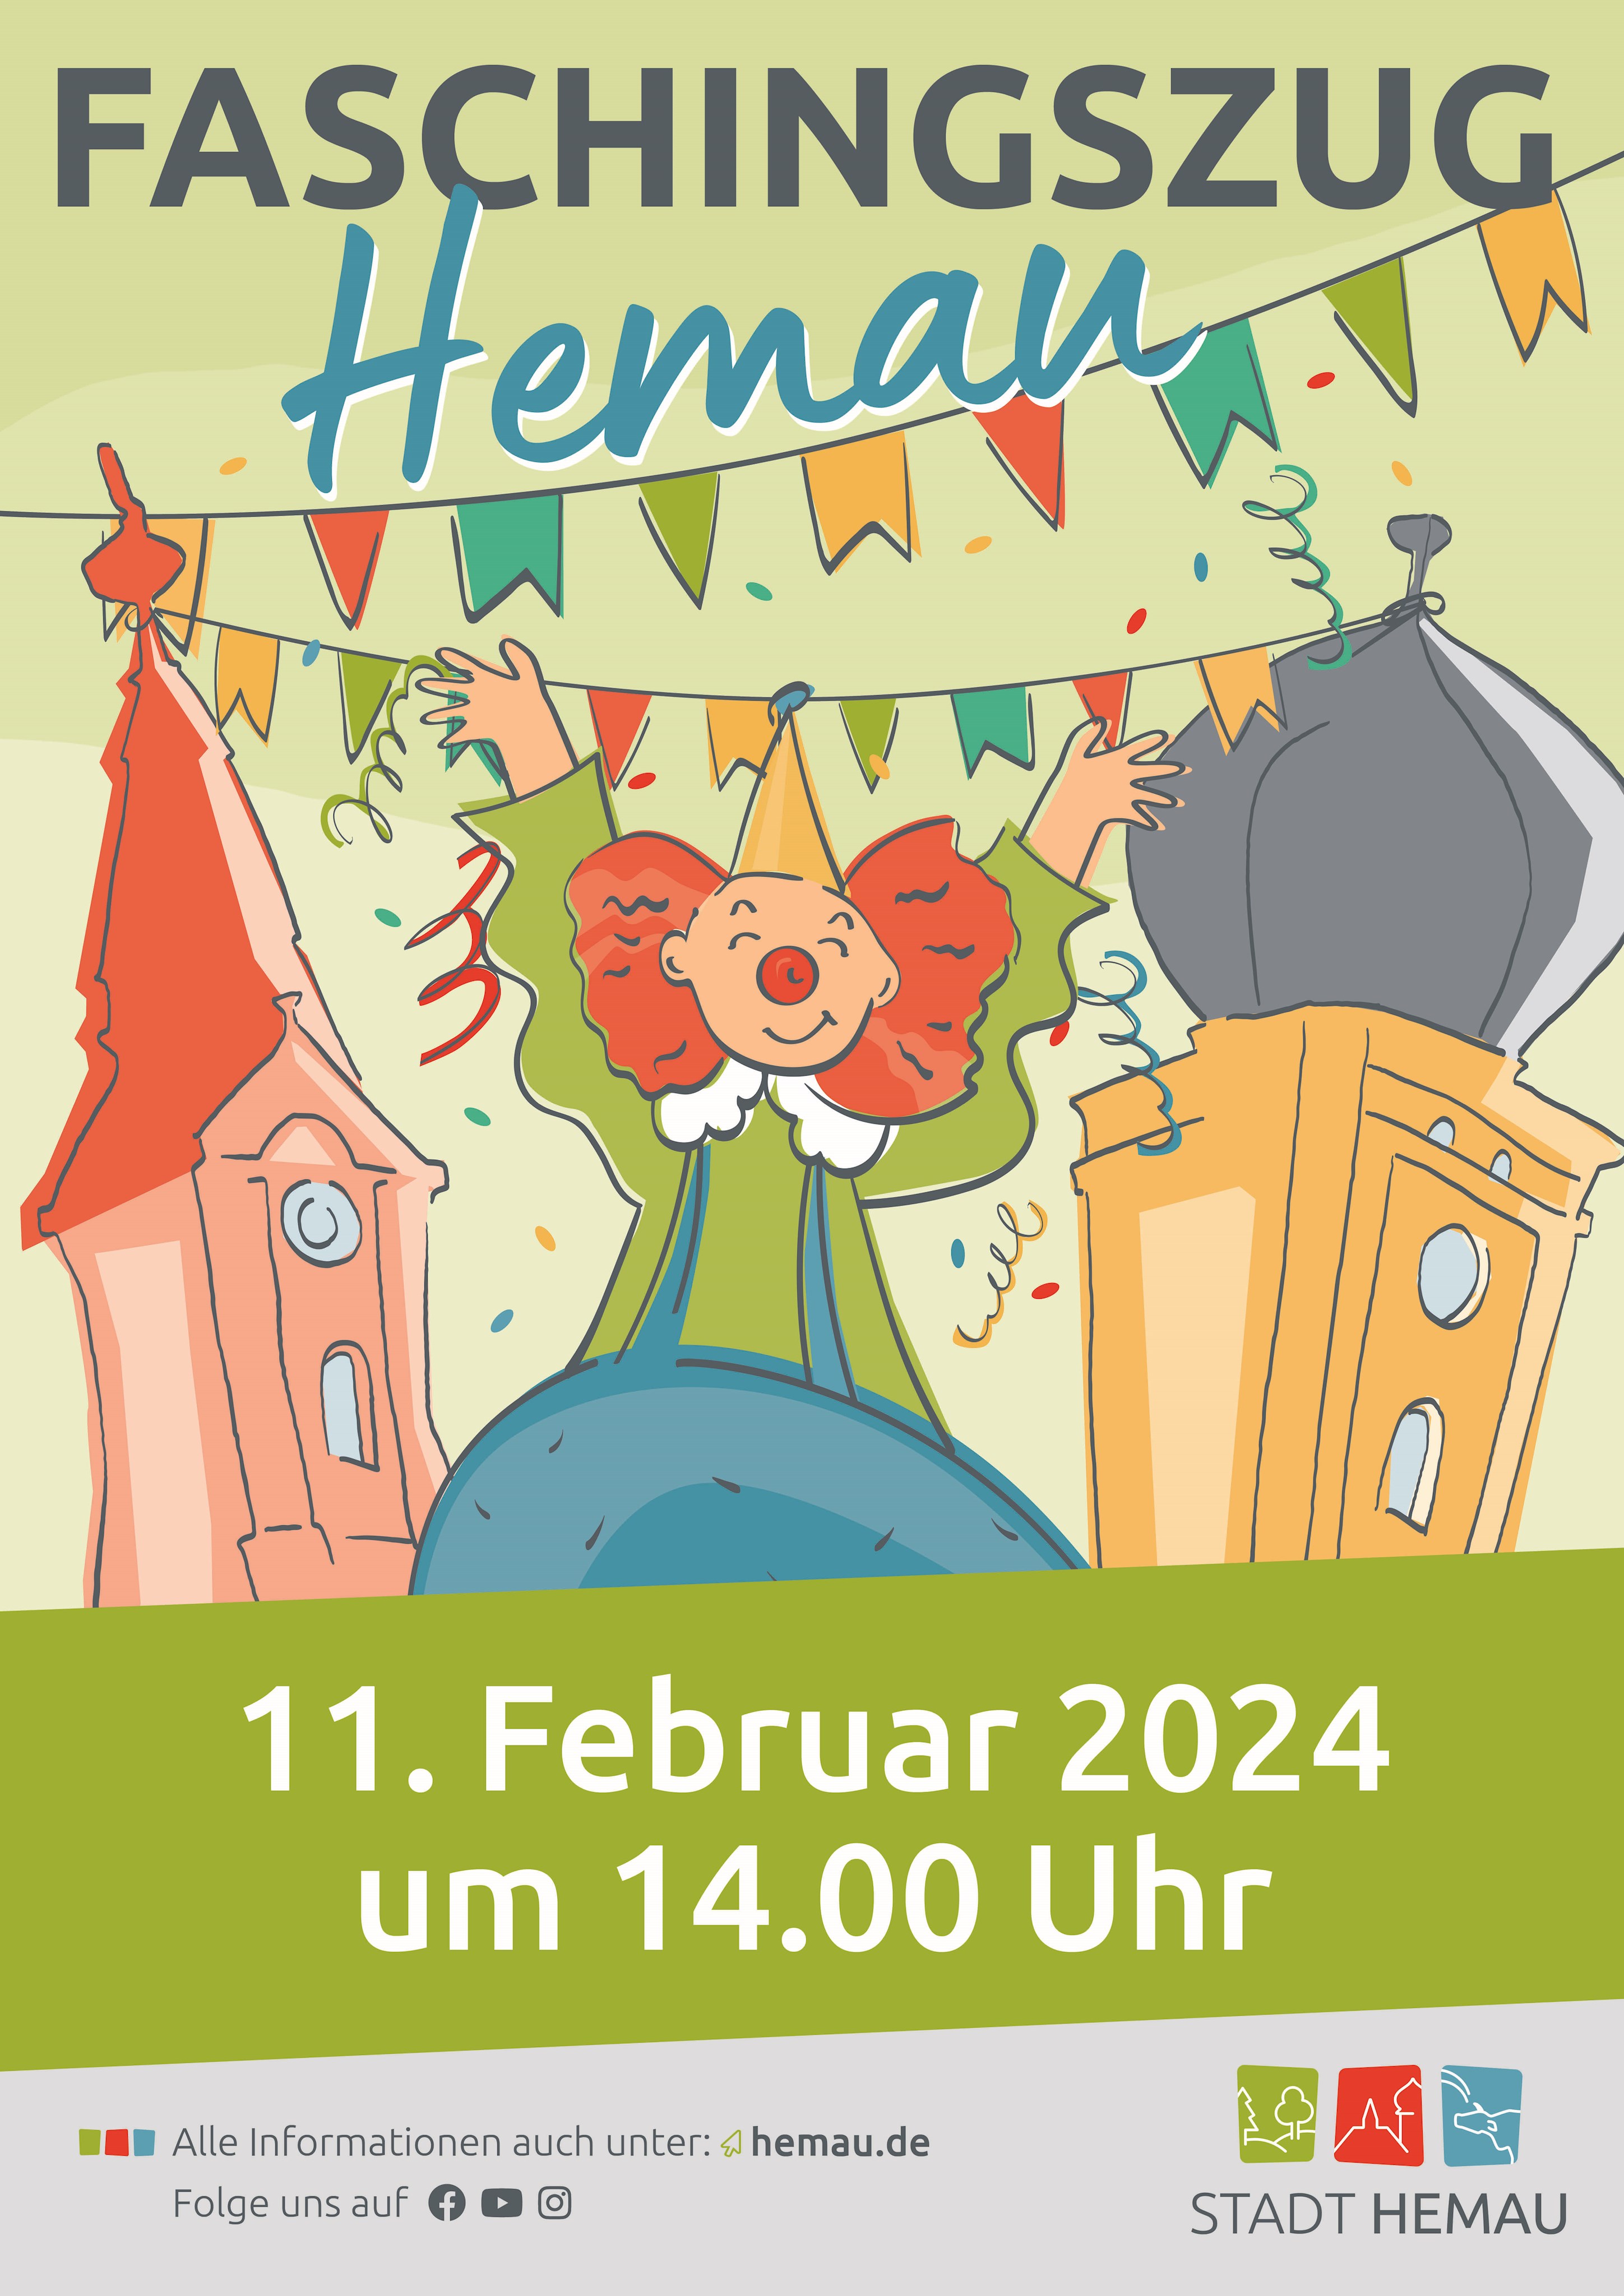 Der Hemauer Faschingszug findet am 11. Februar 2024 statt.